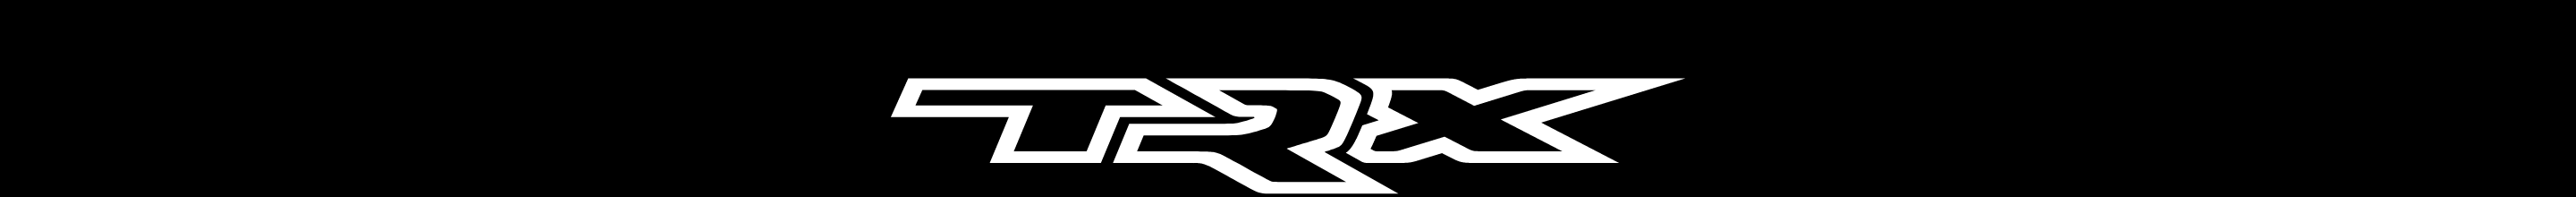 Logo de TRX.